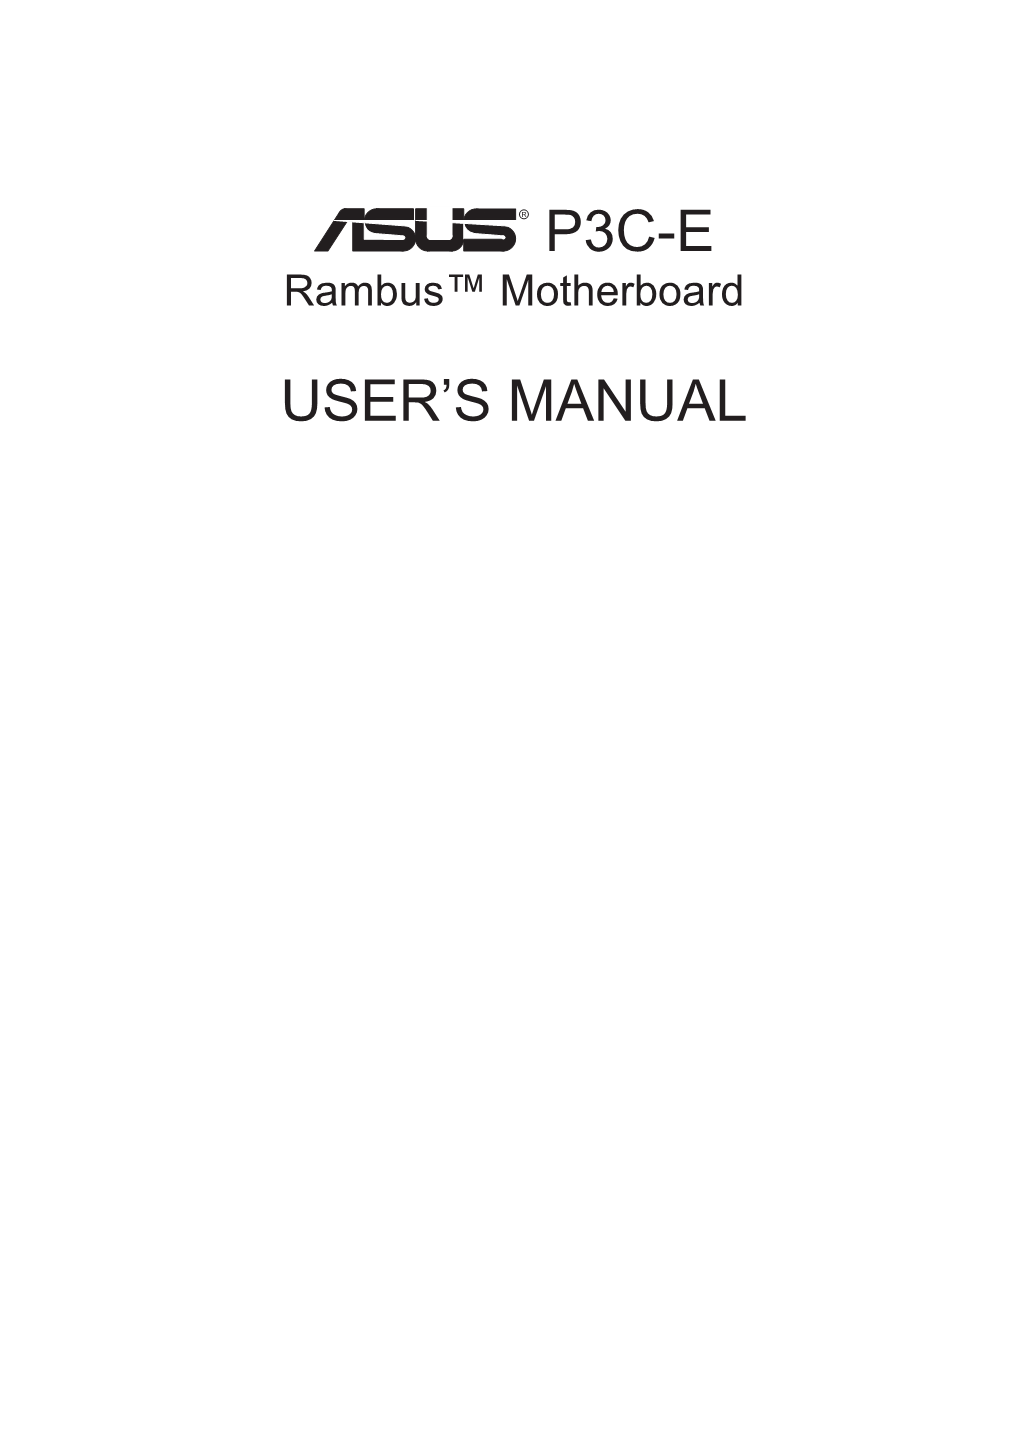 ASUS P3C-E Rambus™ Motherboard